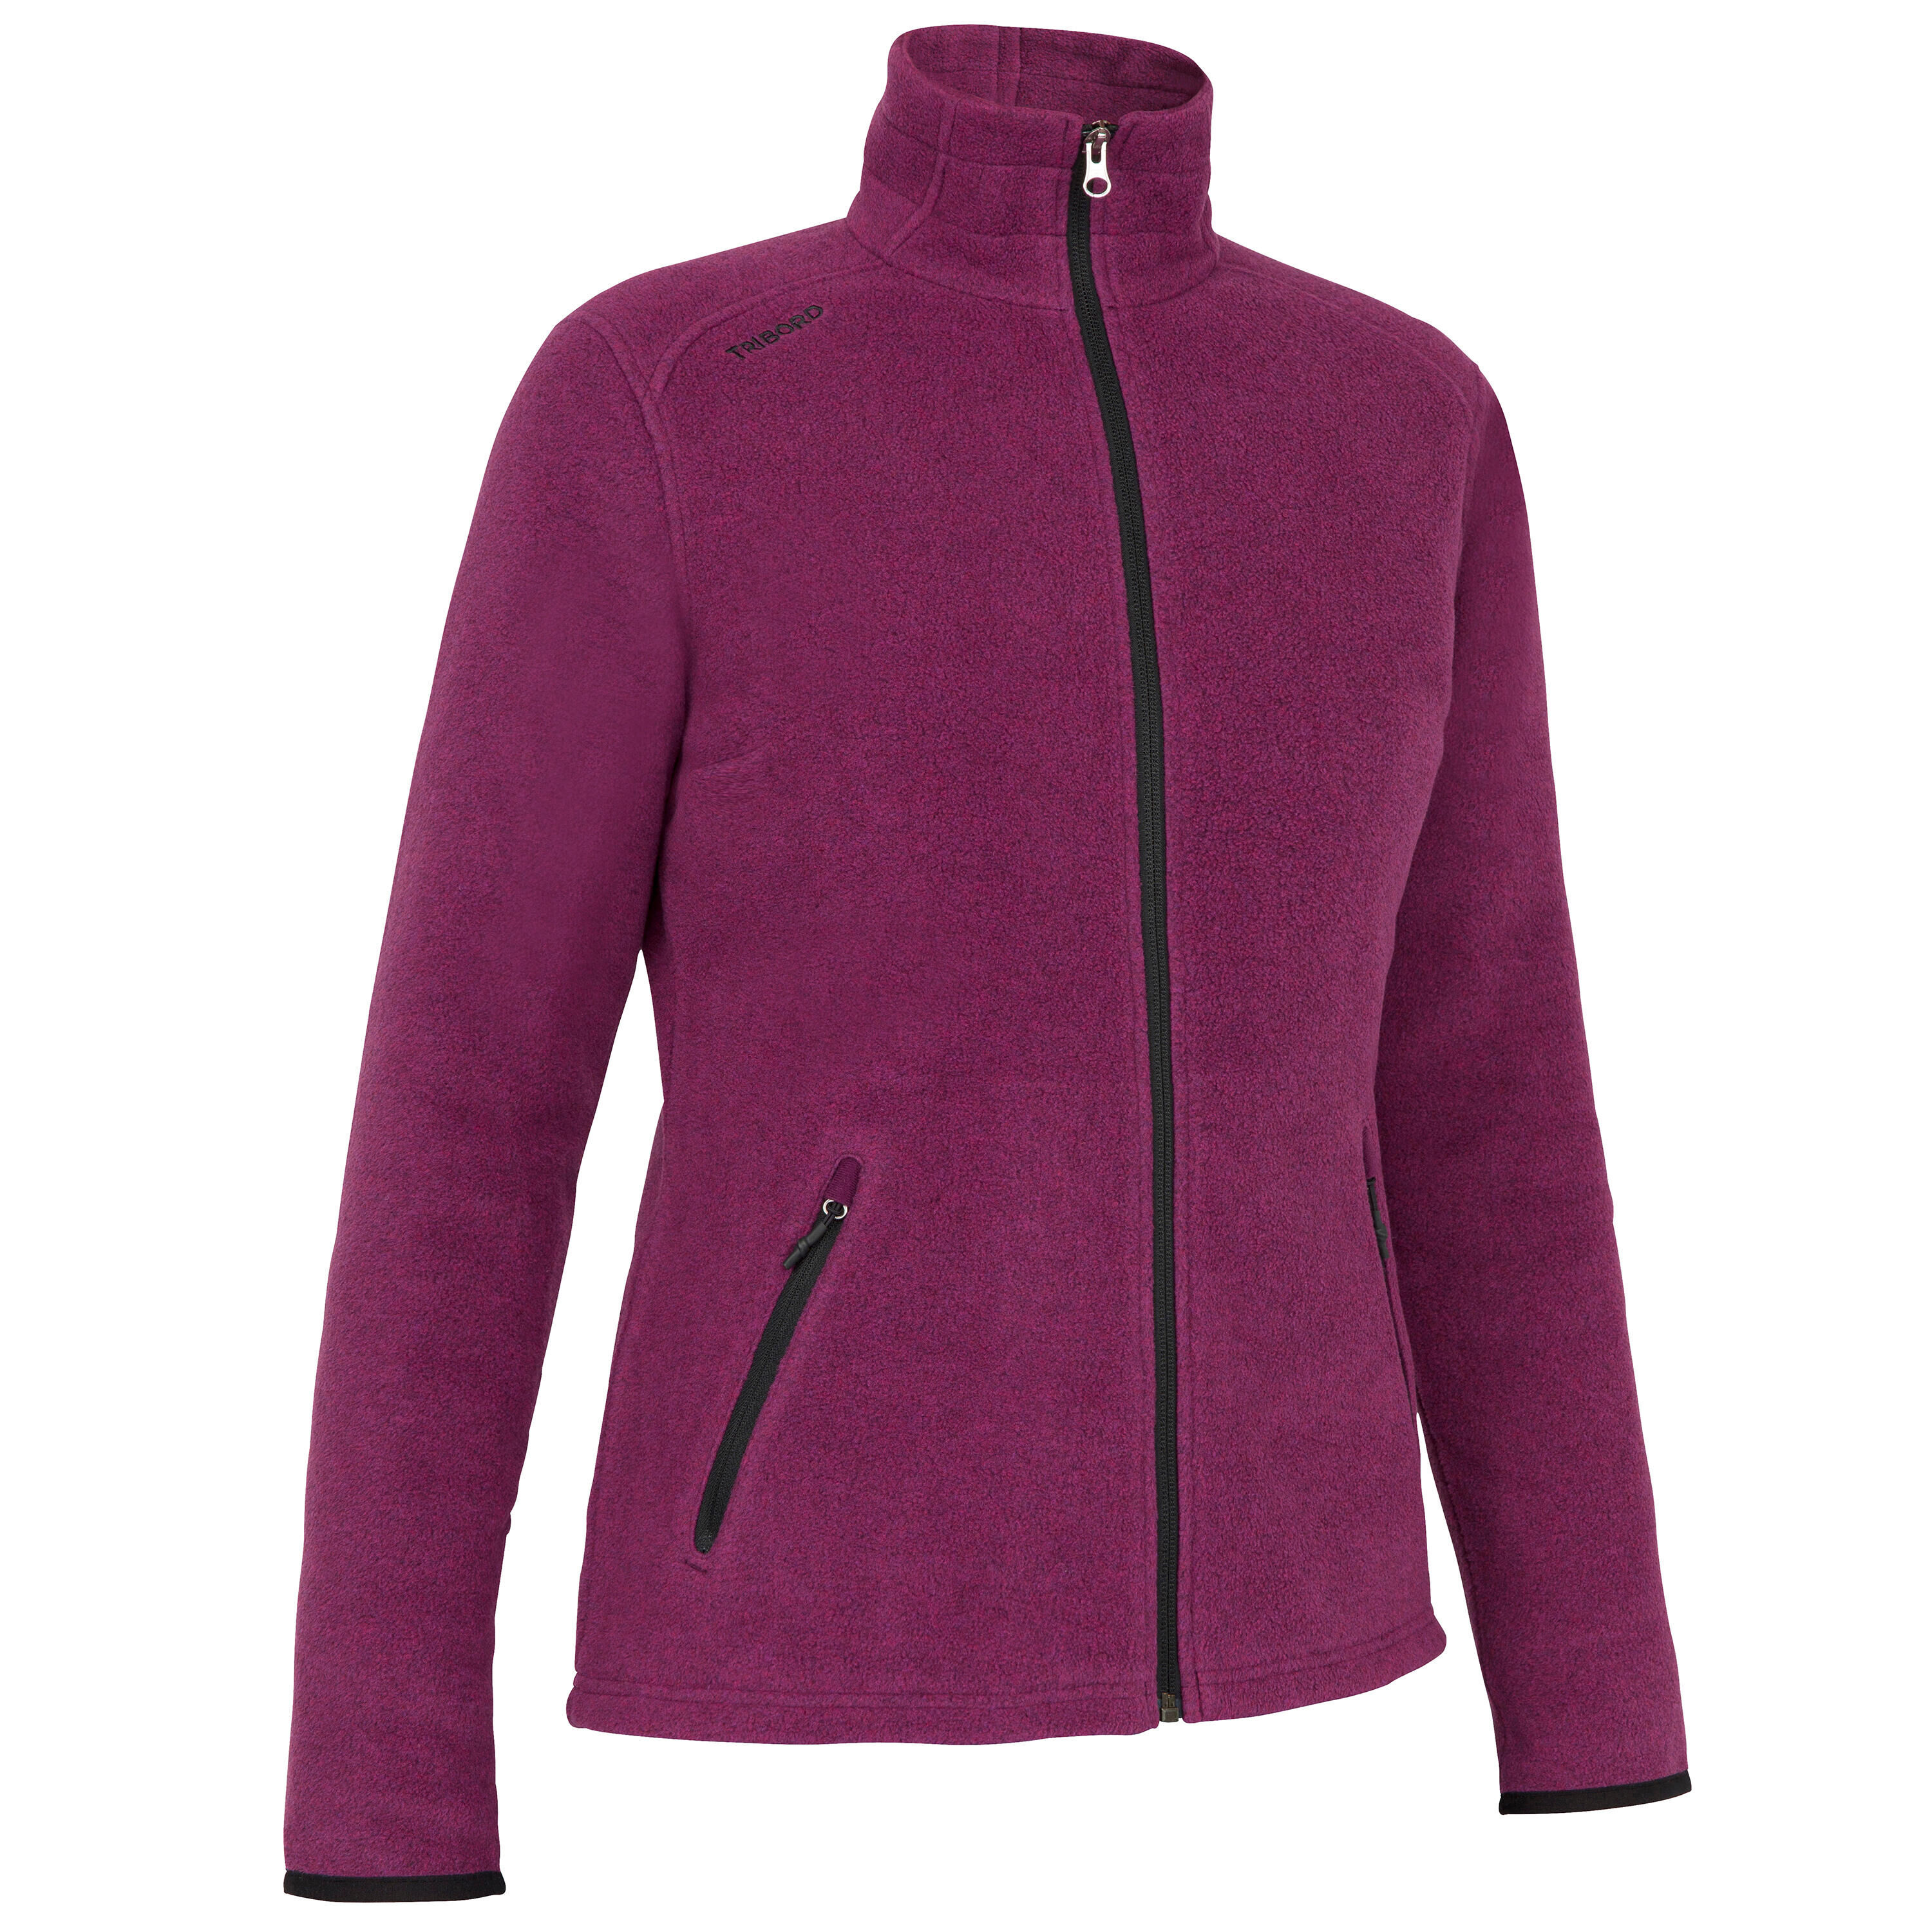 TRIBORD Women warm fleece sailing jacket 100 - Mottled dark Violet